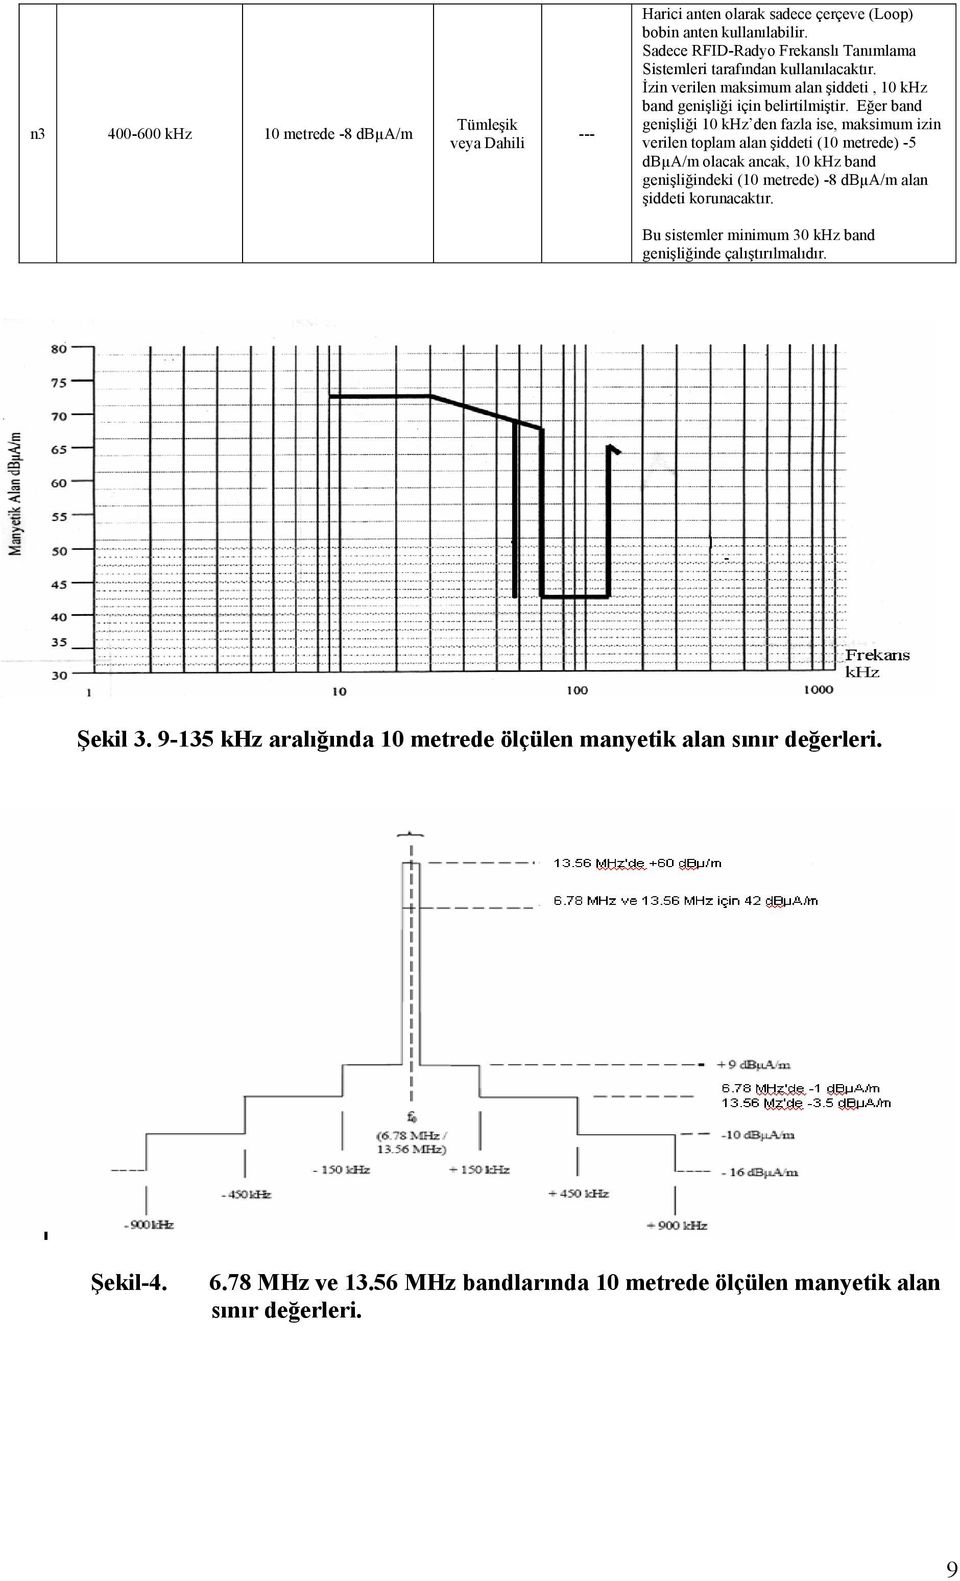 Eğer bnd genişliği 10 khz den fzl ise, mksimum izin verilen toplm ln şiddeti (10 metrede) -5 dbµa/m olck nck, 10 khz bnd genişliğindeki (10